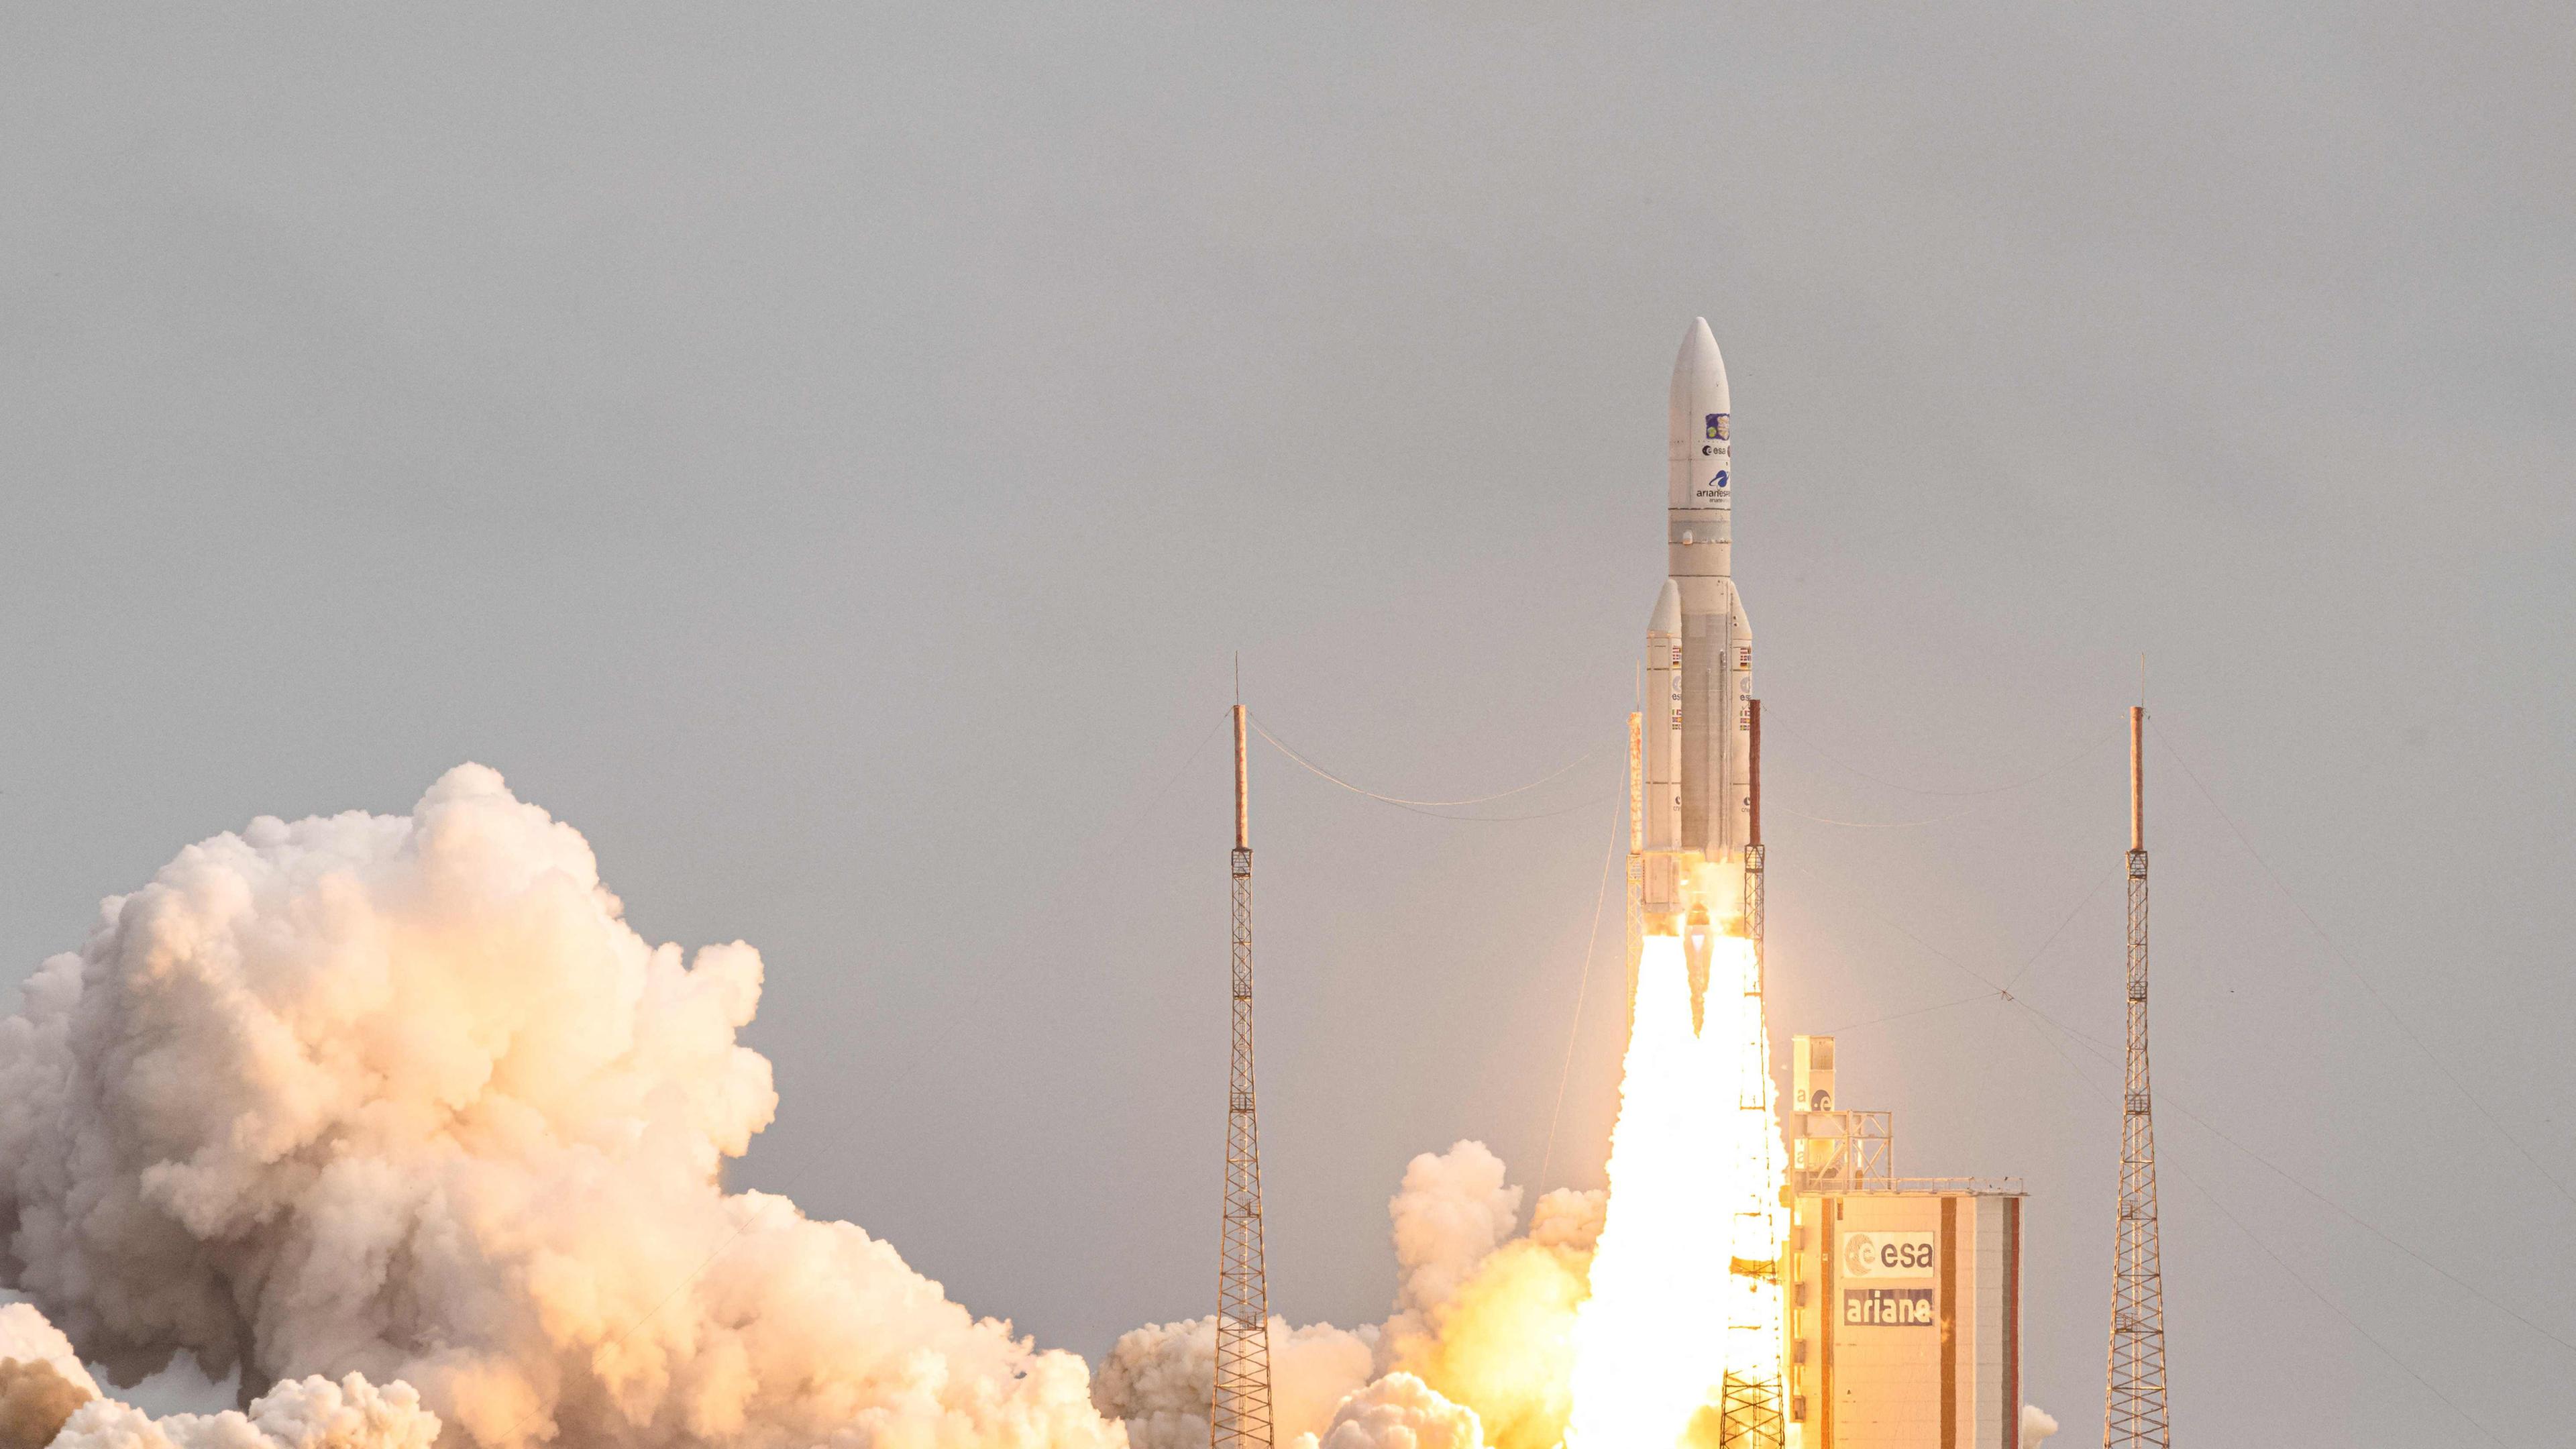 Ariane-5-Rakete beim Abheben von ihrer Startrampe im Raumfahrtzentrum Guayana in Kourou, Französisch-Guayana.